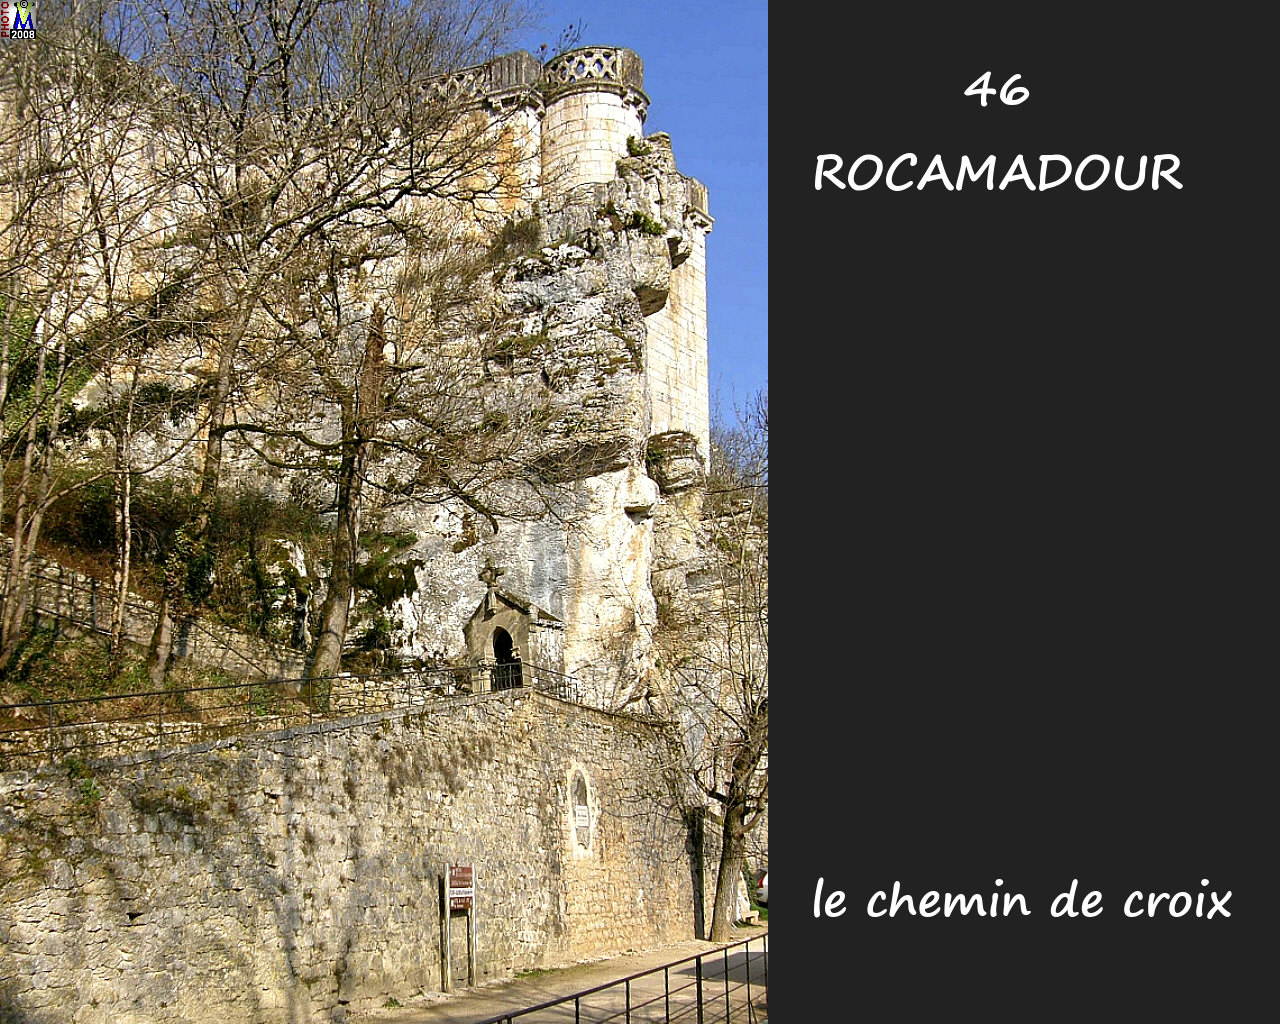 46ROCAMADOUR_croix_204.jpg